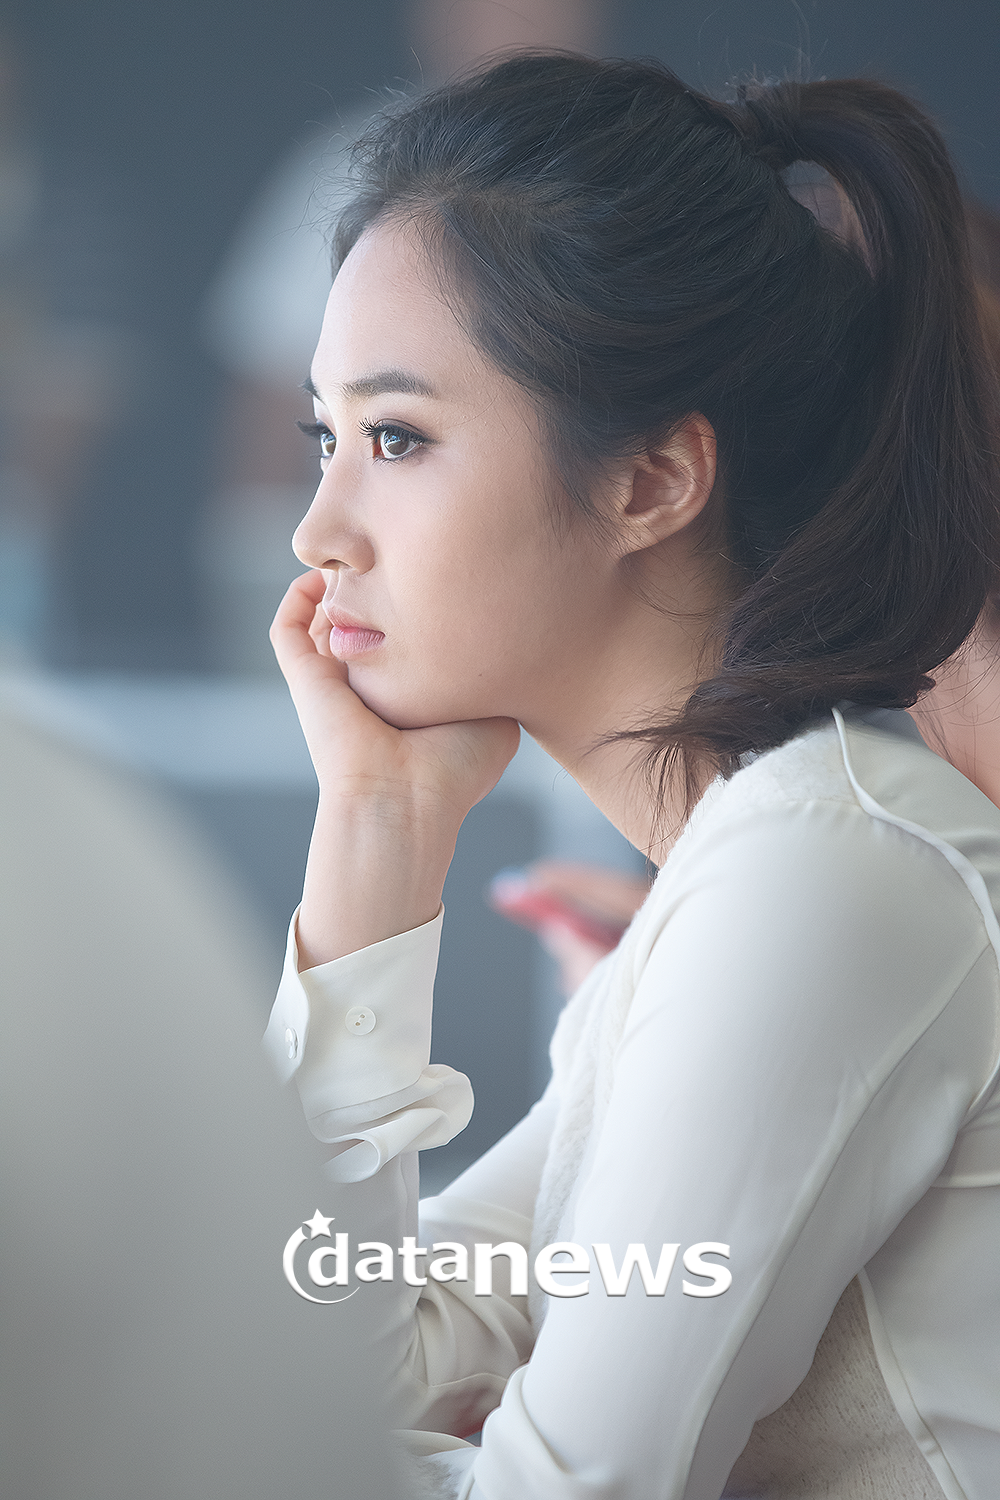 [PIC][30-08-2013]Yuri xuất hiện tại sự kiện khai trương cửa hàng "MOOSE KNUCKLES" vào chiều nay 2270C35052213D80058BEE